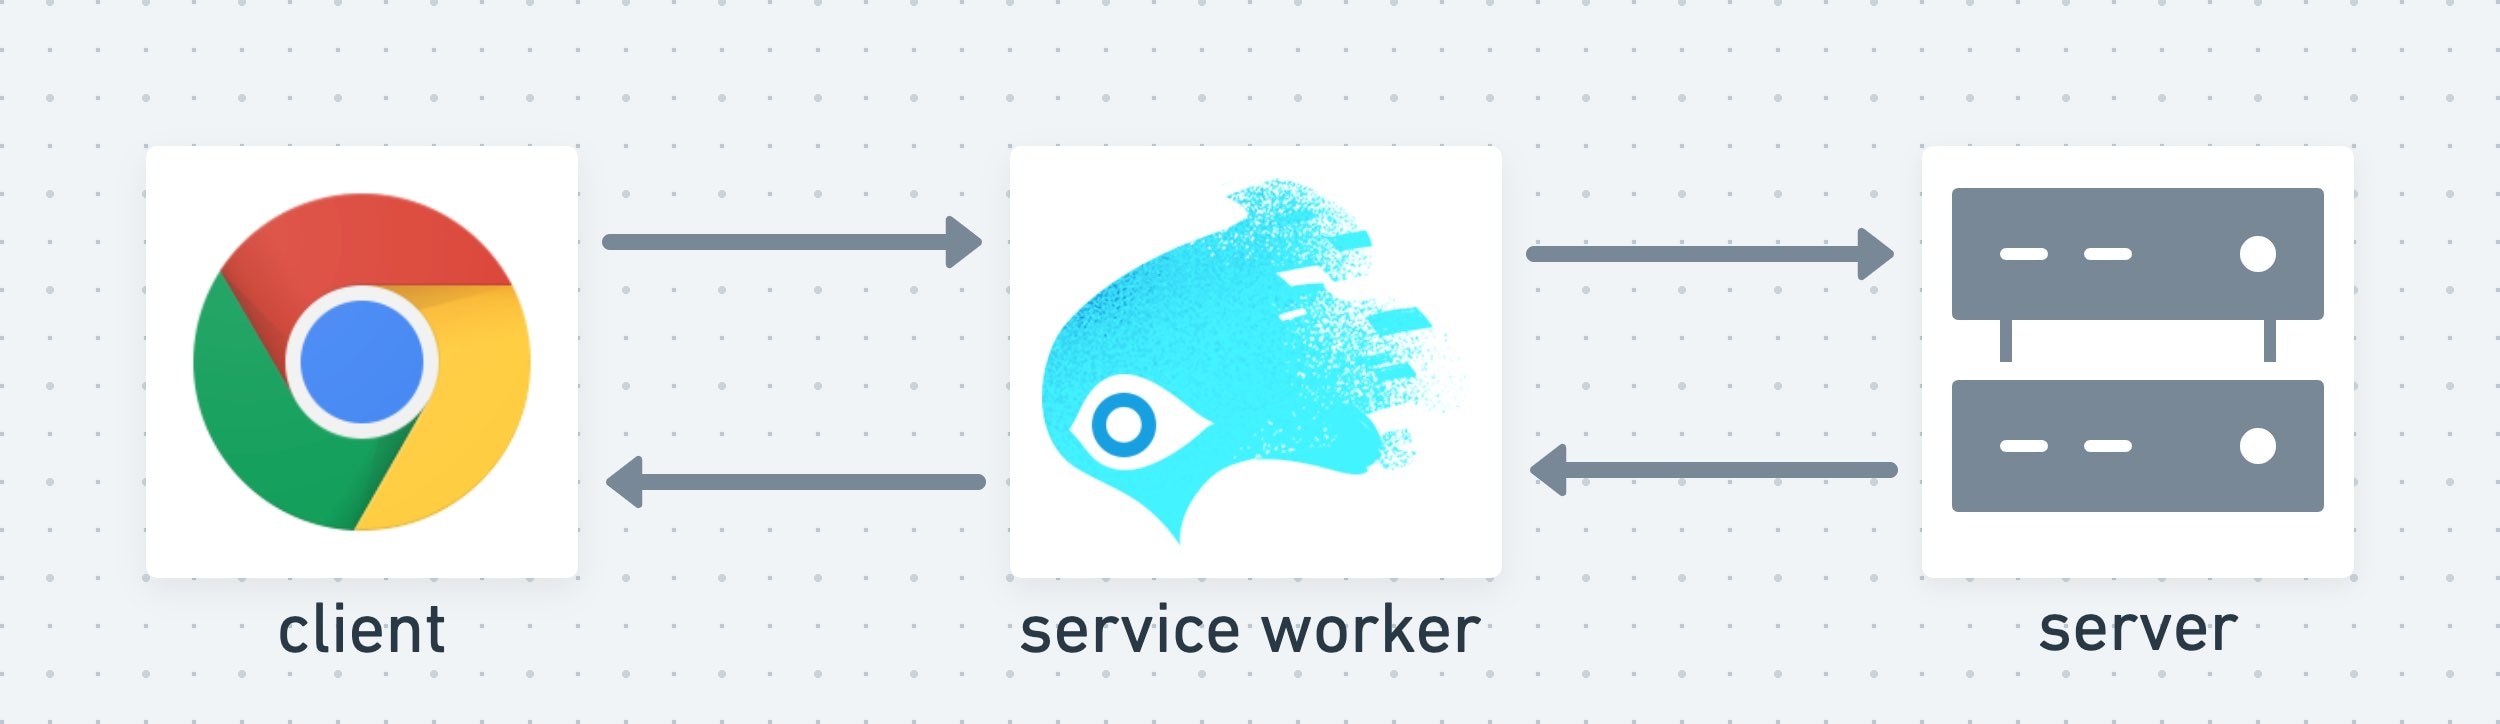 קובץ השירות (service worker) משמש כשכבה האמצעית בין הלקוח לשרת